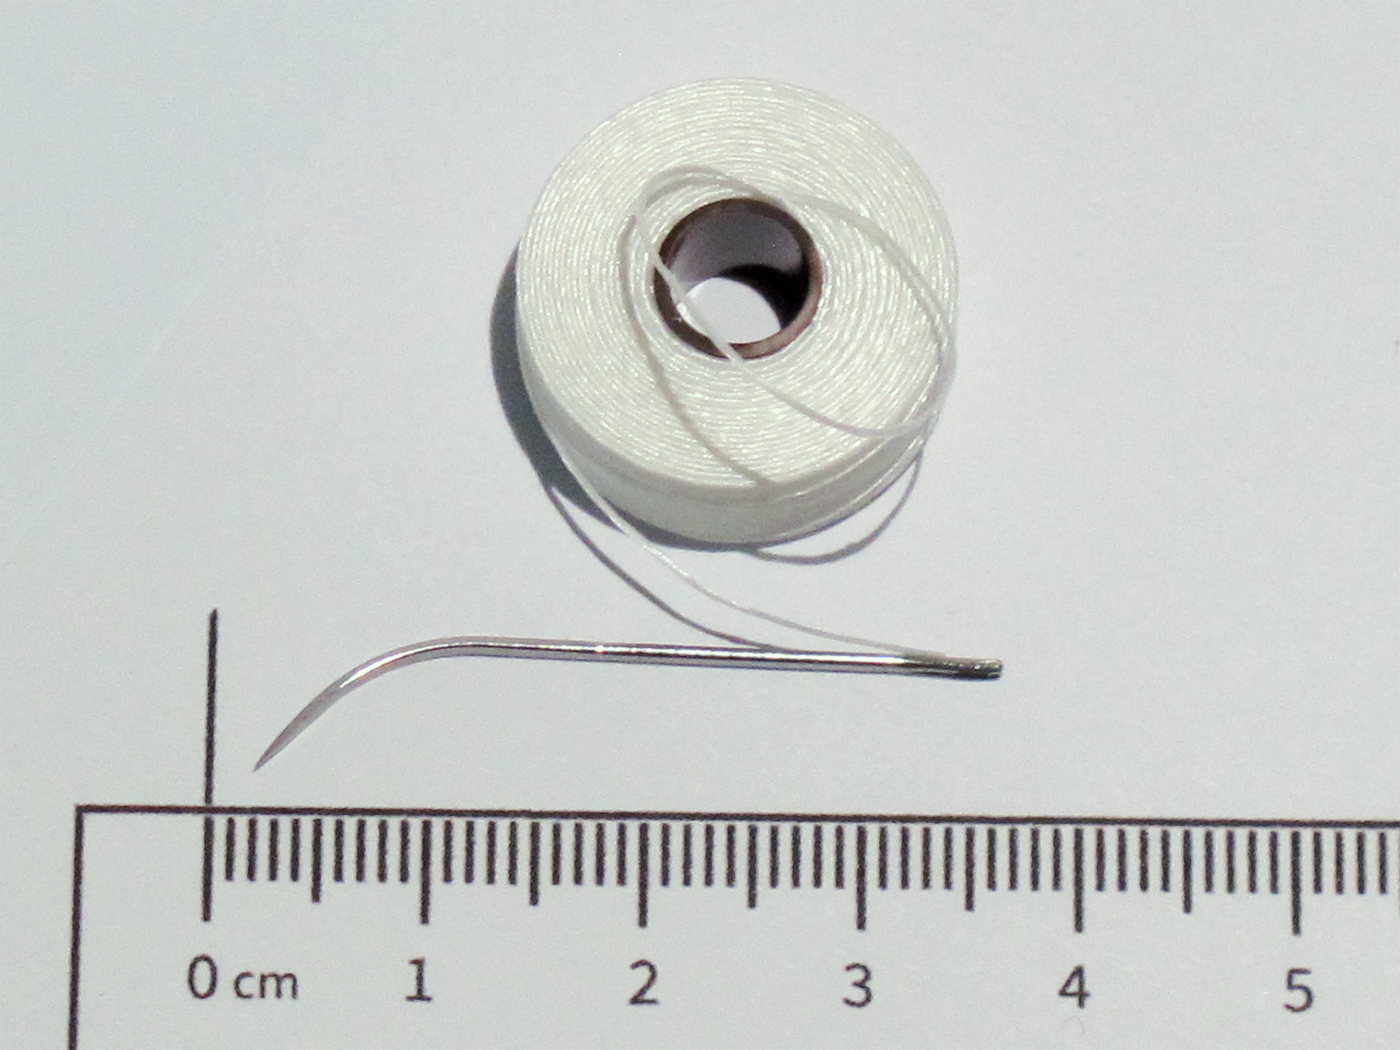 Fine cosmetic thread, 49 m roll - 0